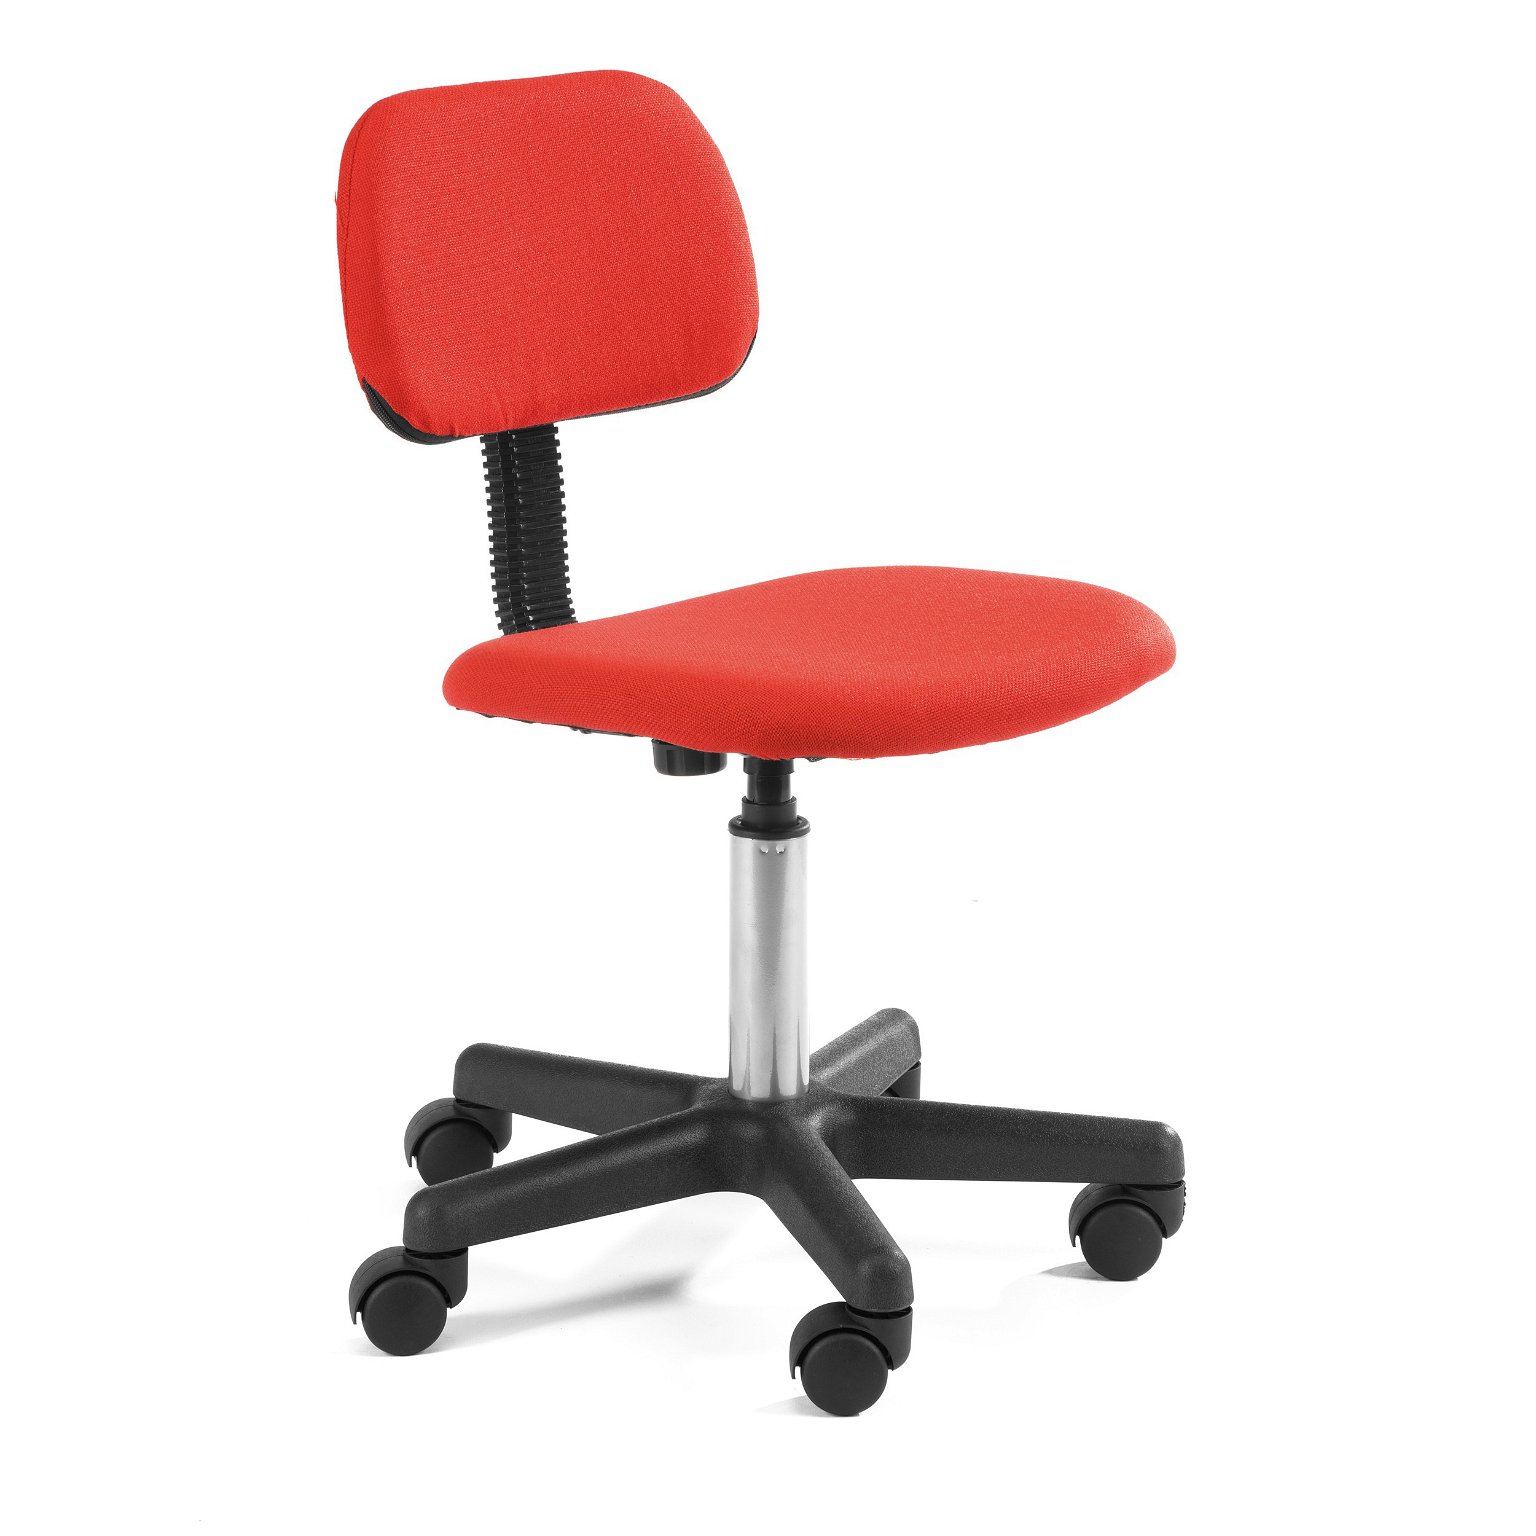 Vaikiška kėdė Fd-1, raudona